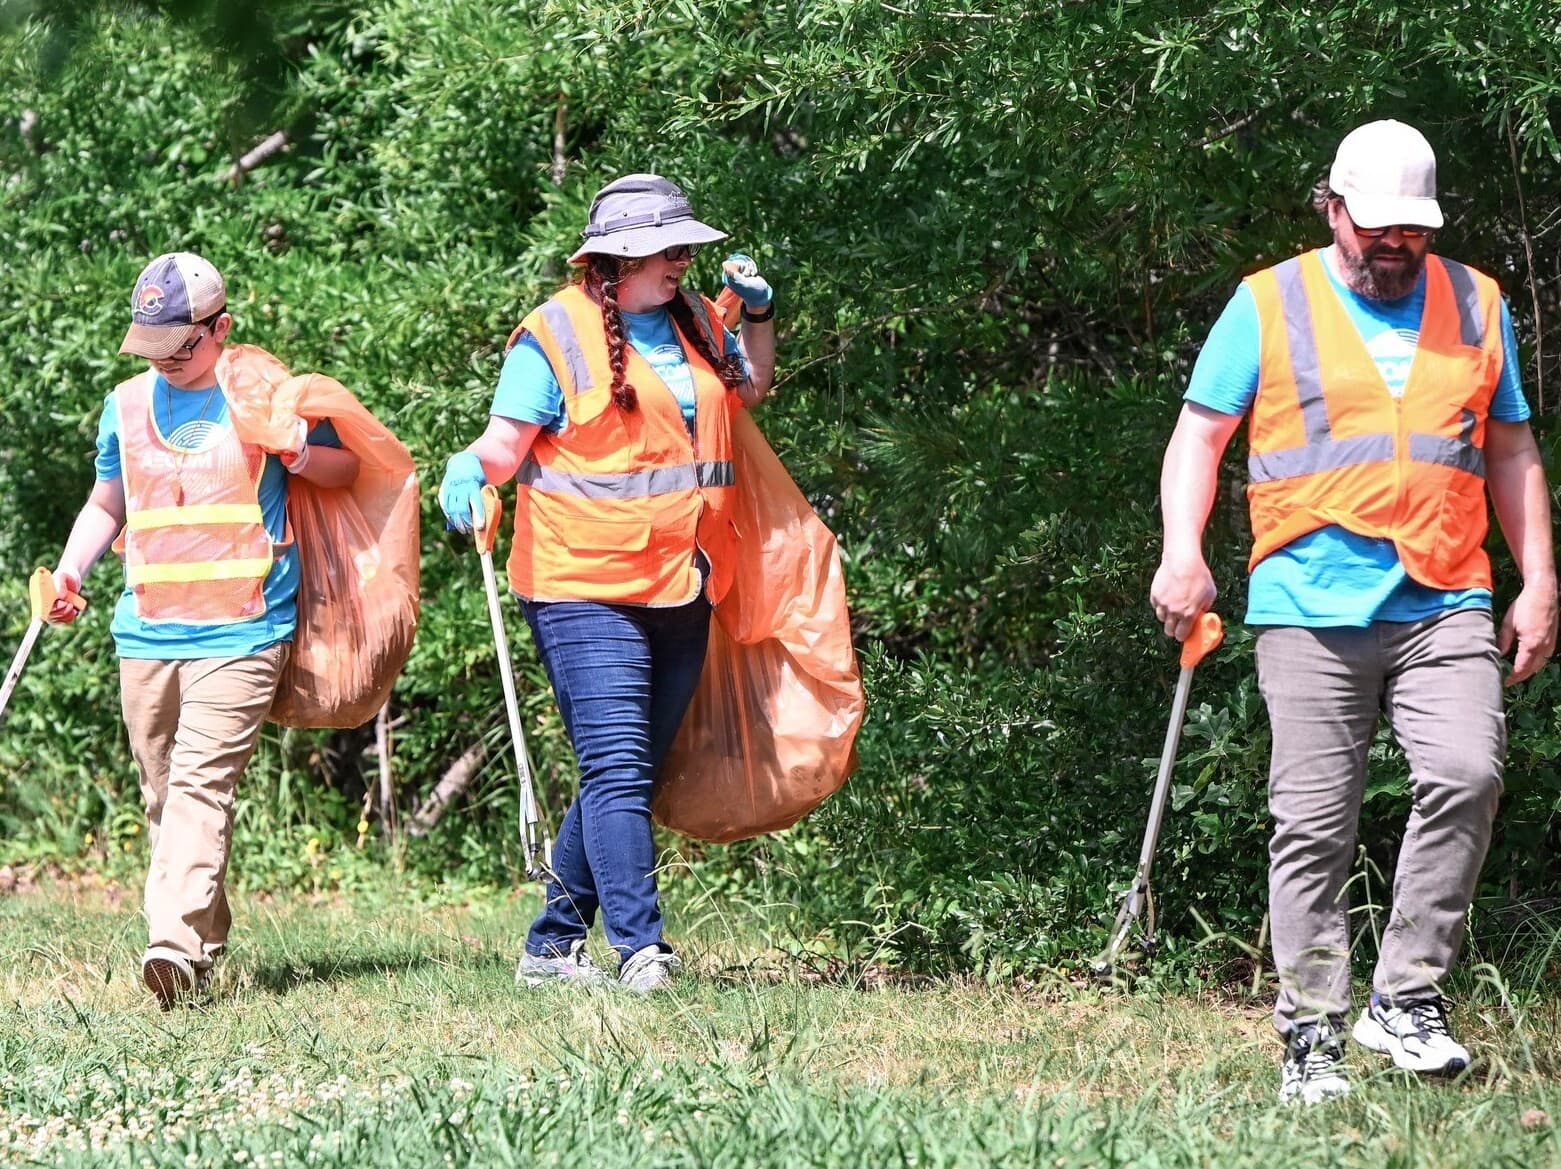 Creek Cleanup volunteers in high vis vests pick up trash